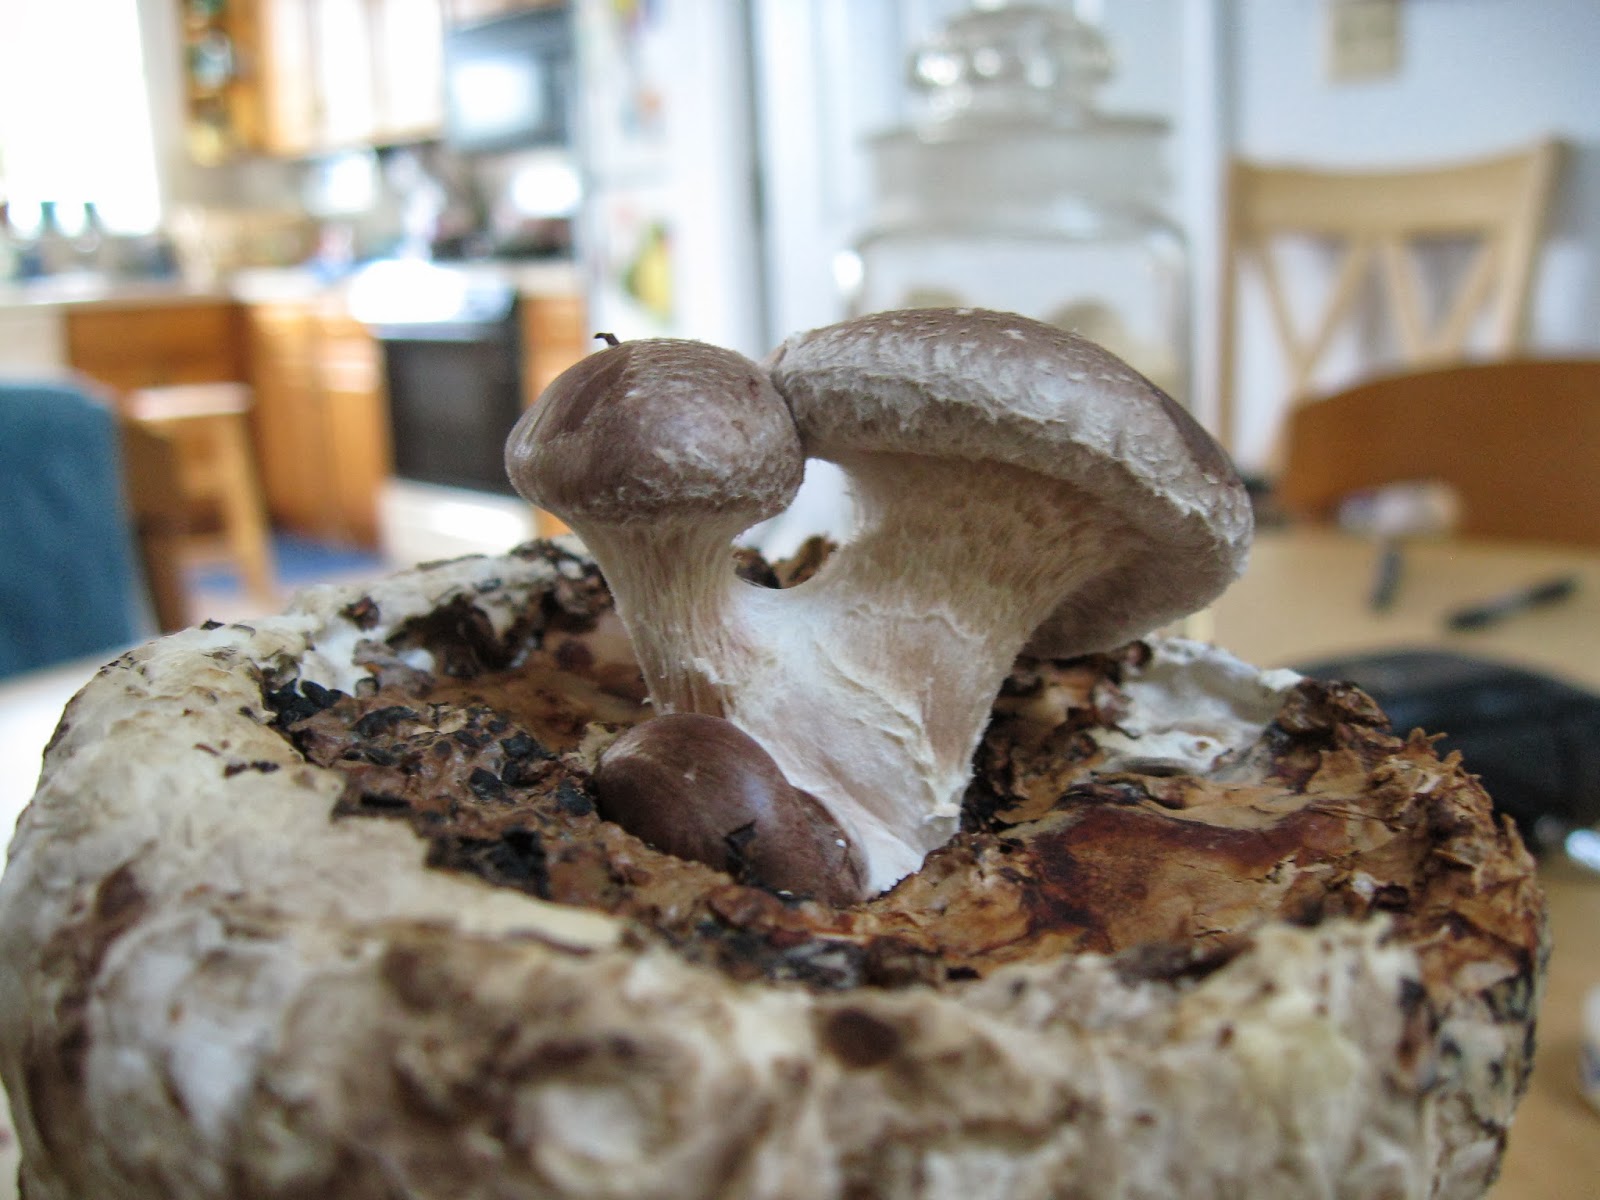 Alli S Garden Growing Gourmet Mushrooms In Your Living Room Part 3